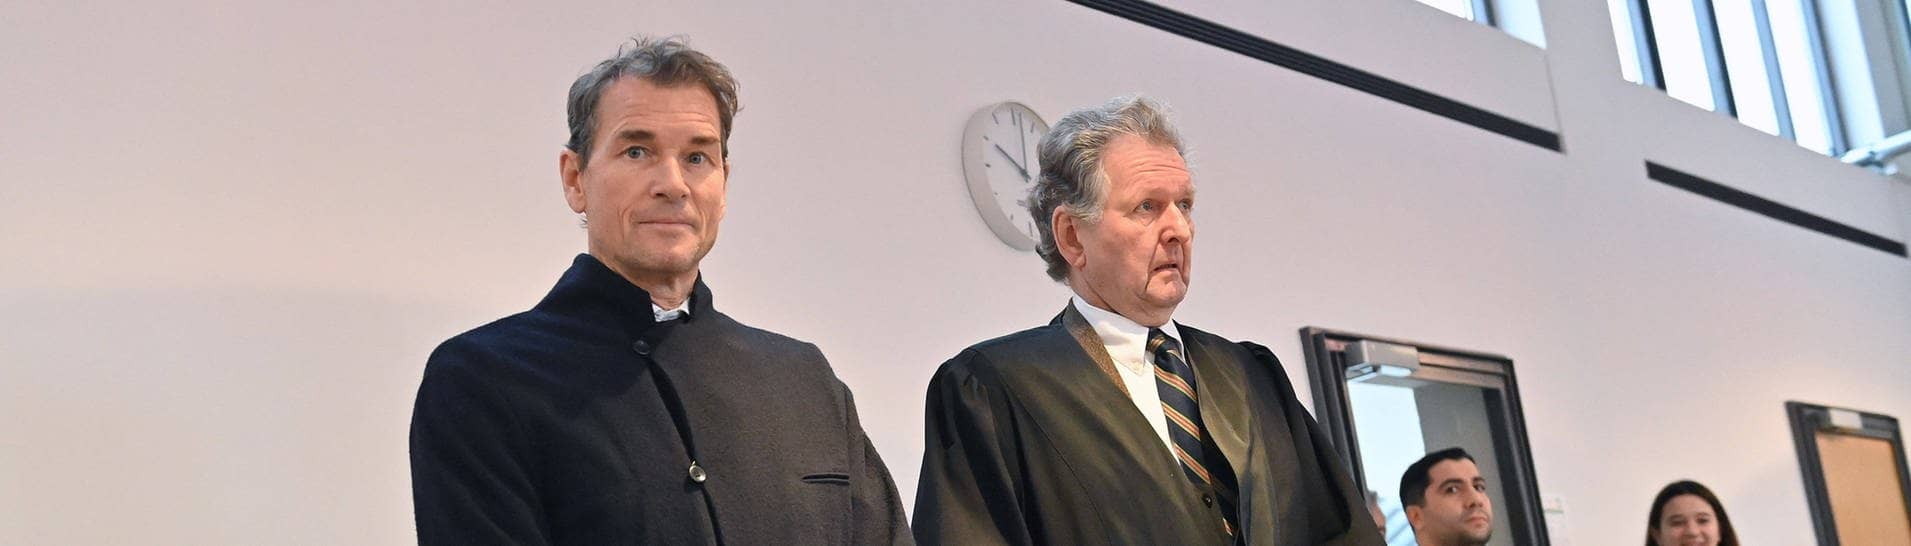 Jens Lehmann wurde zu einer Geldstrafe von 420.000 Euro verurteilt. (Foto: IMAGO, IMAGO / Sven Simon)